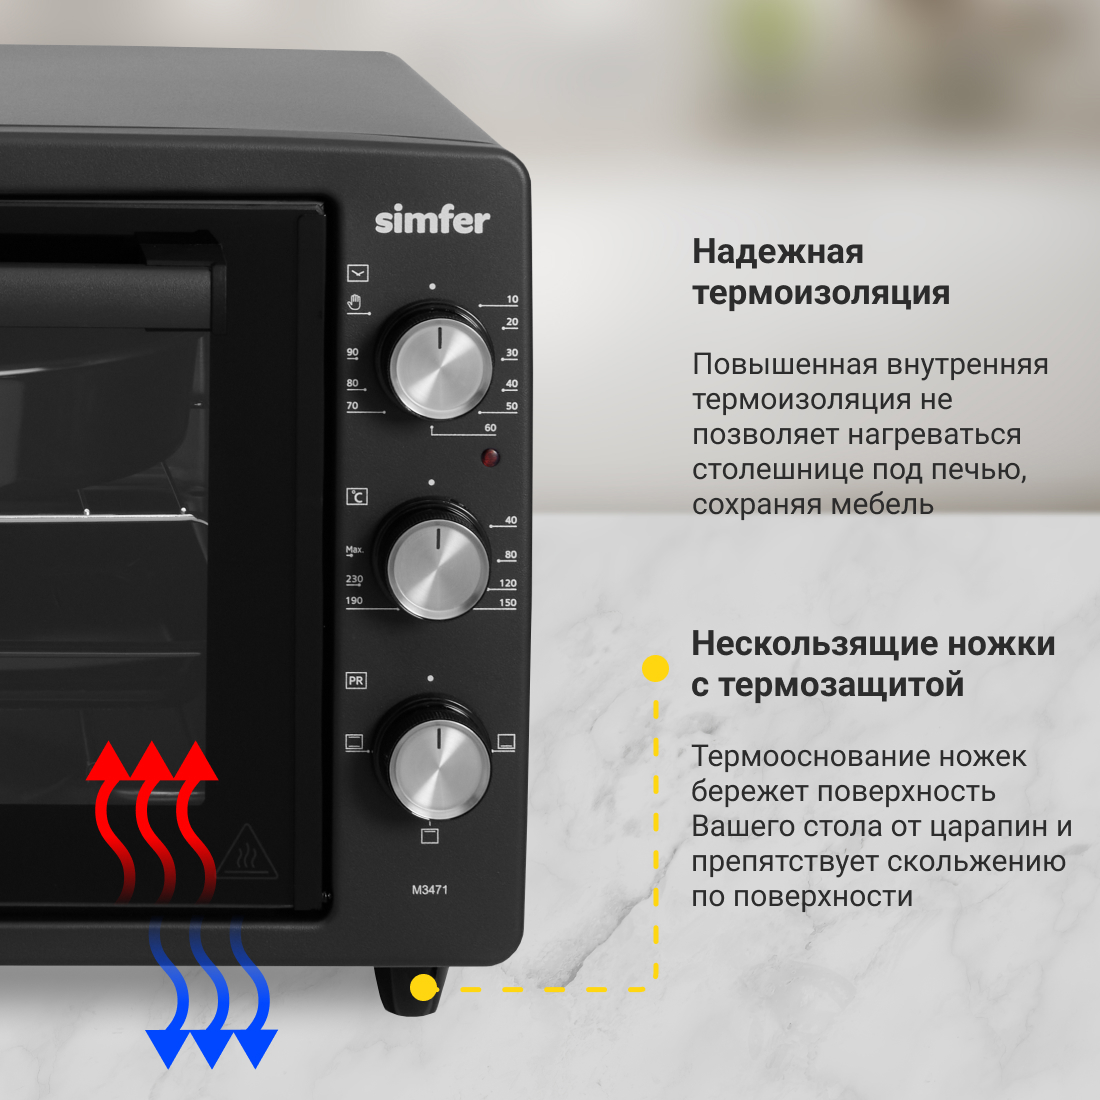 Мини-печь Simfer M3471 (3 режима, цвет черный) Мини-печь Simfer M3471 (3 режима, цвет черный) - фото 5